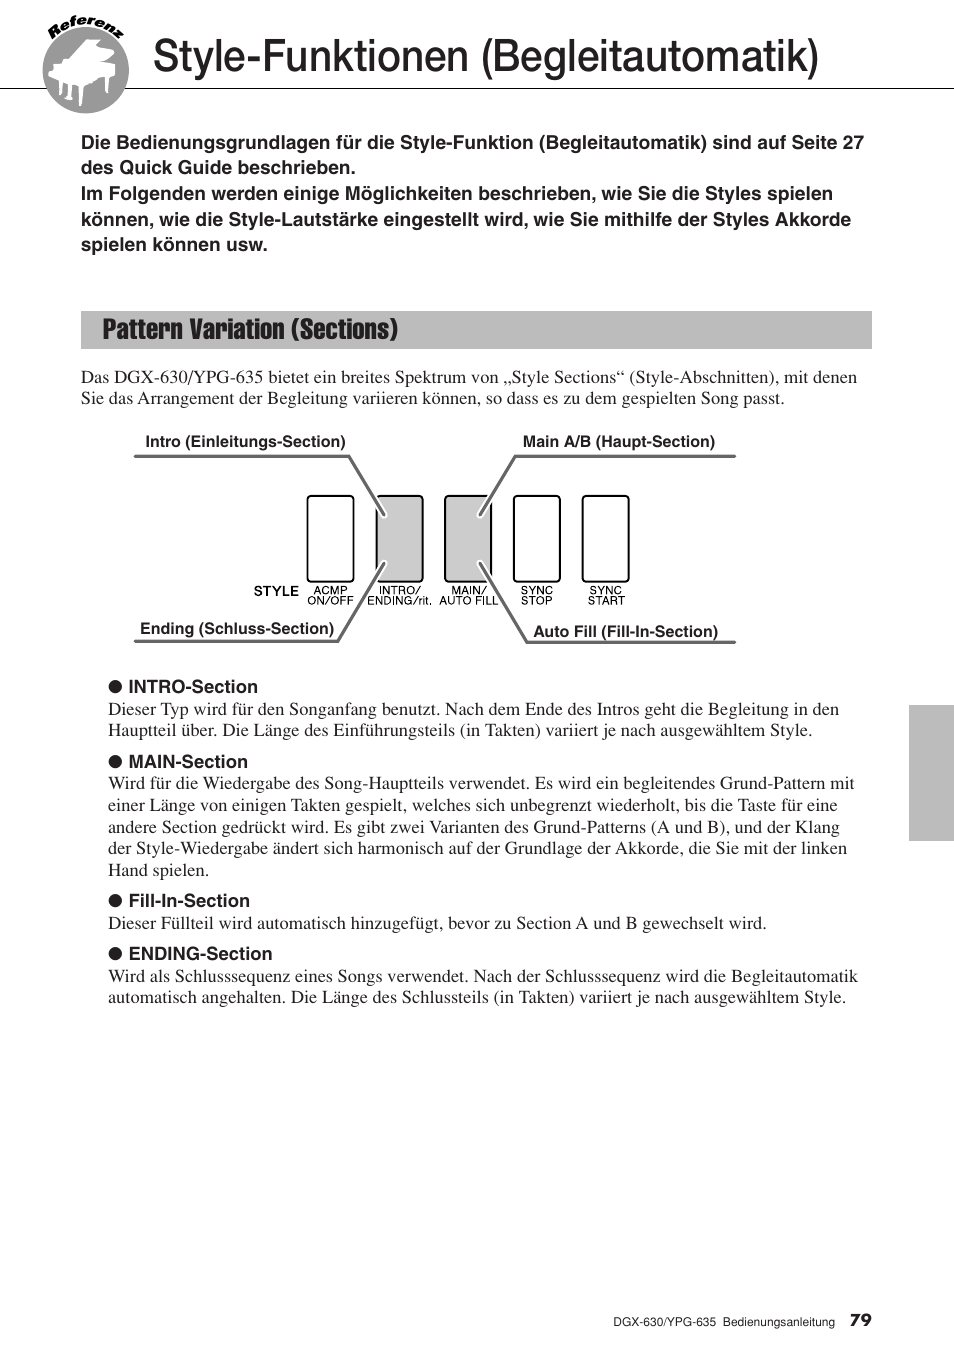 Style-funktionen (begleitautomatik), Pattern variation (sections) | Yamaha DGX-630 Benutzerhandbuch | Seite 79 / 160